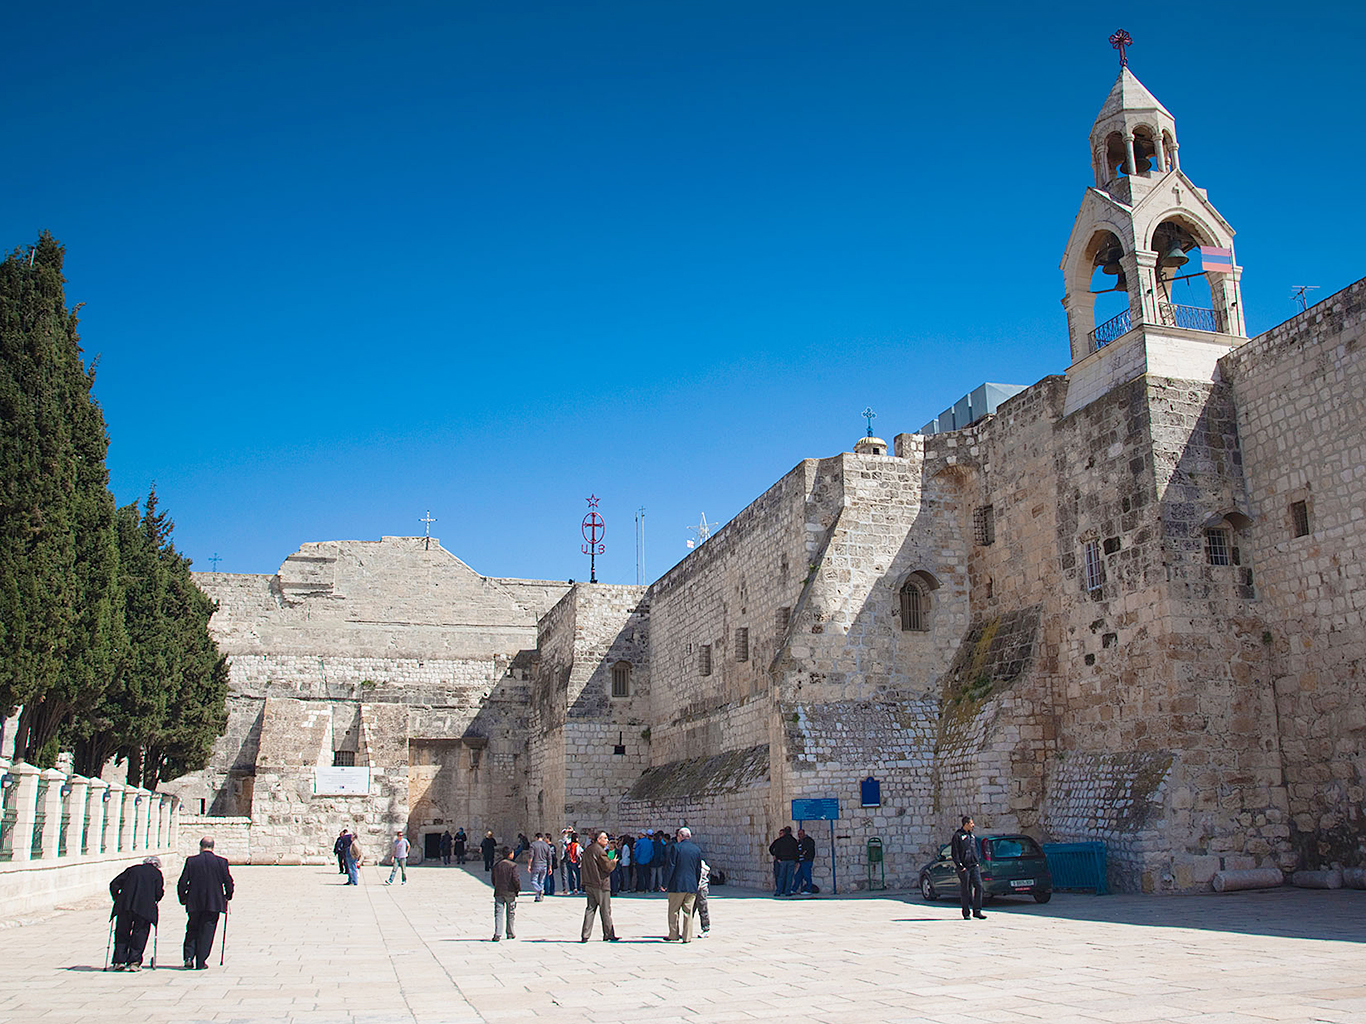 Chrám Narození Páně v Betlémě, jedna z nejstarších křesťanských svatyní